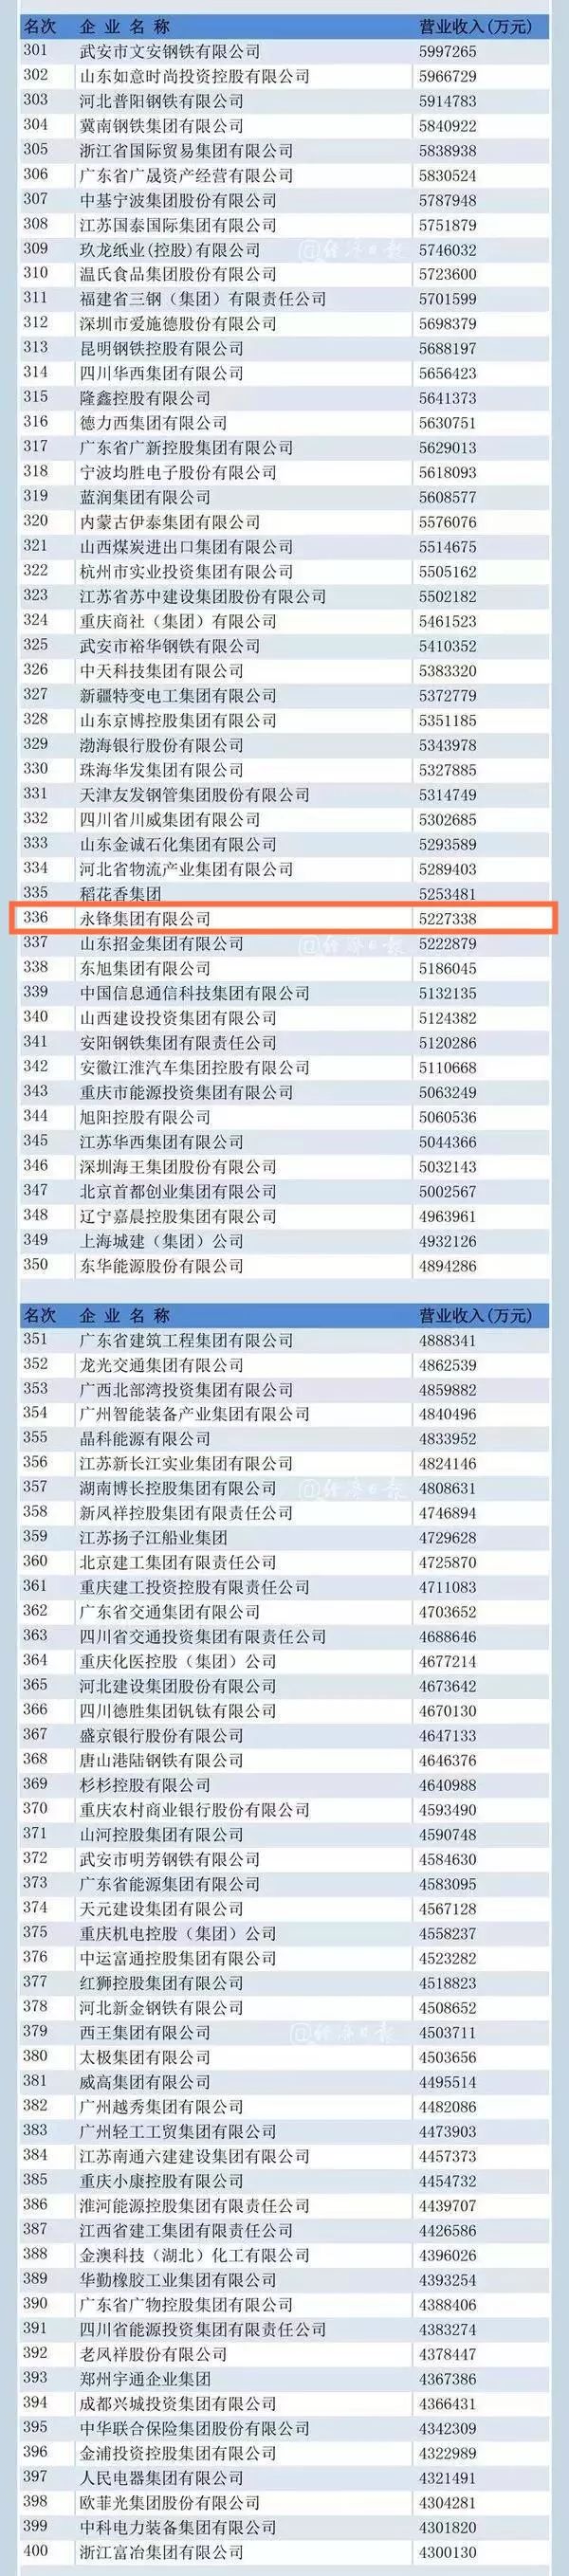 2019山东猪饲料排行榜_2018年全国各省市饲料工业收入排行榜：山东1332亿